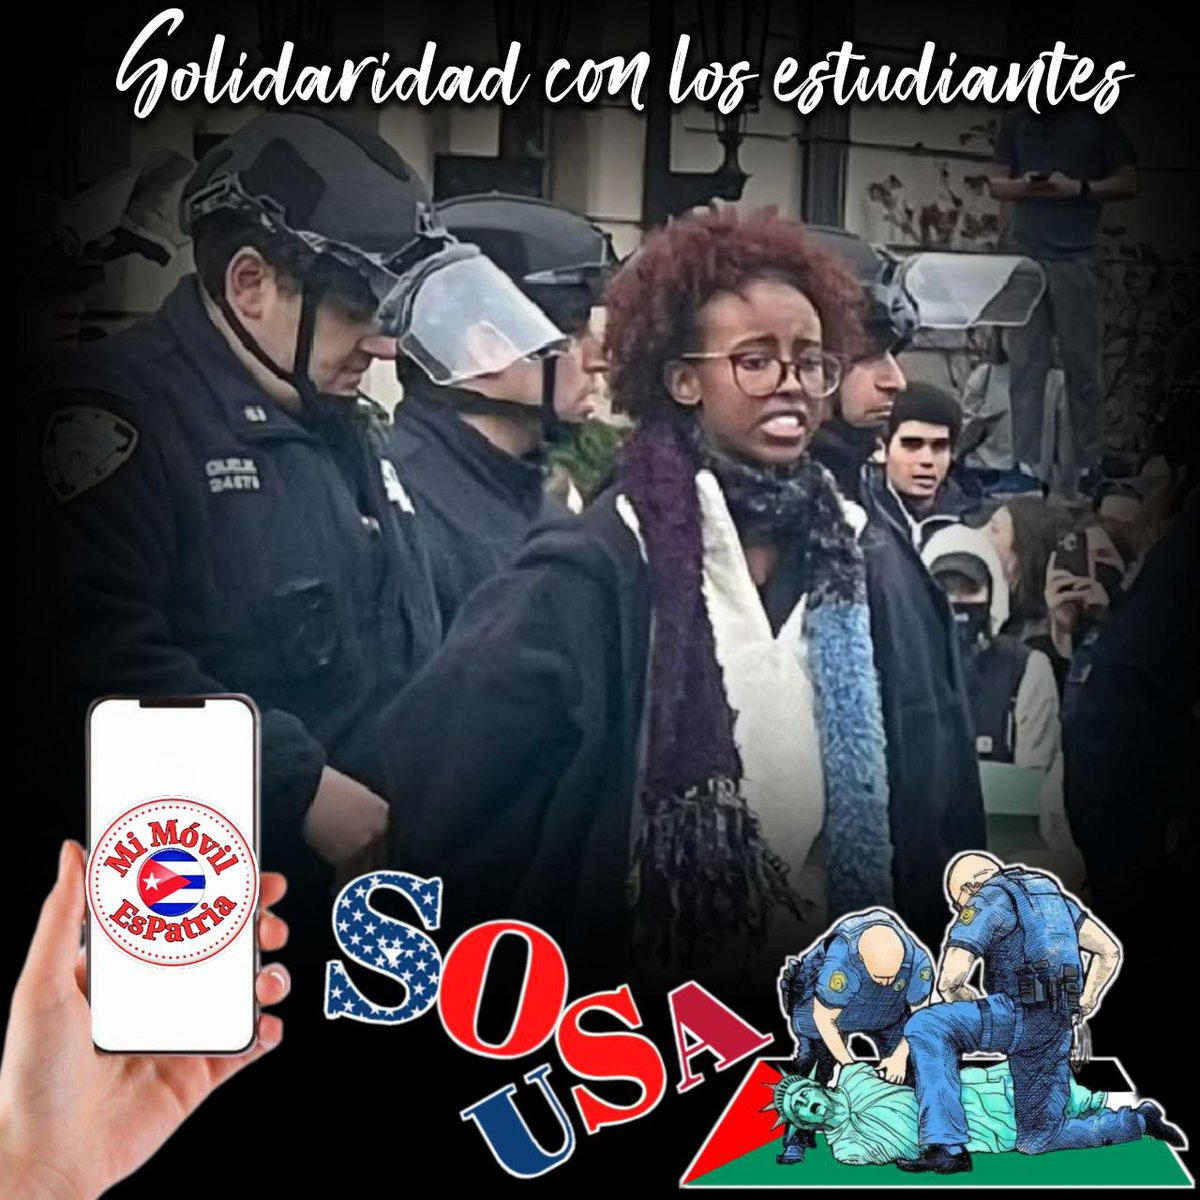 @mimovilespatria @Sucelreyes1 Manifestaciones estudiantiles propalestinas se expanden por universidades de EEUU #FreePalestine #SOSUSA #MiMóvilEsPatria